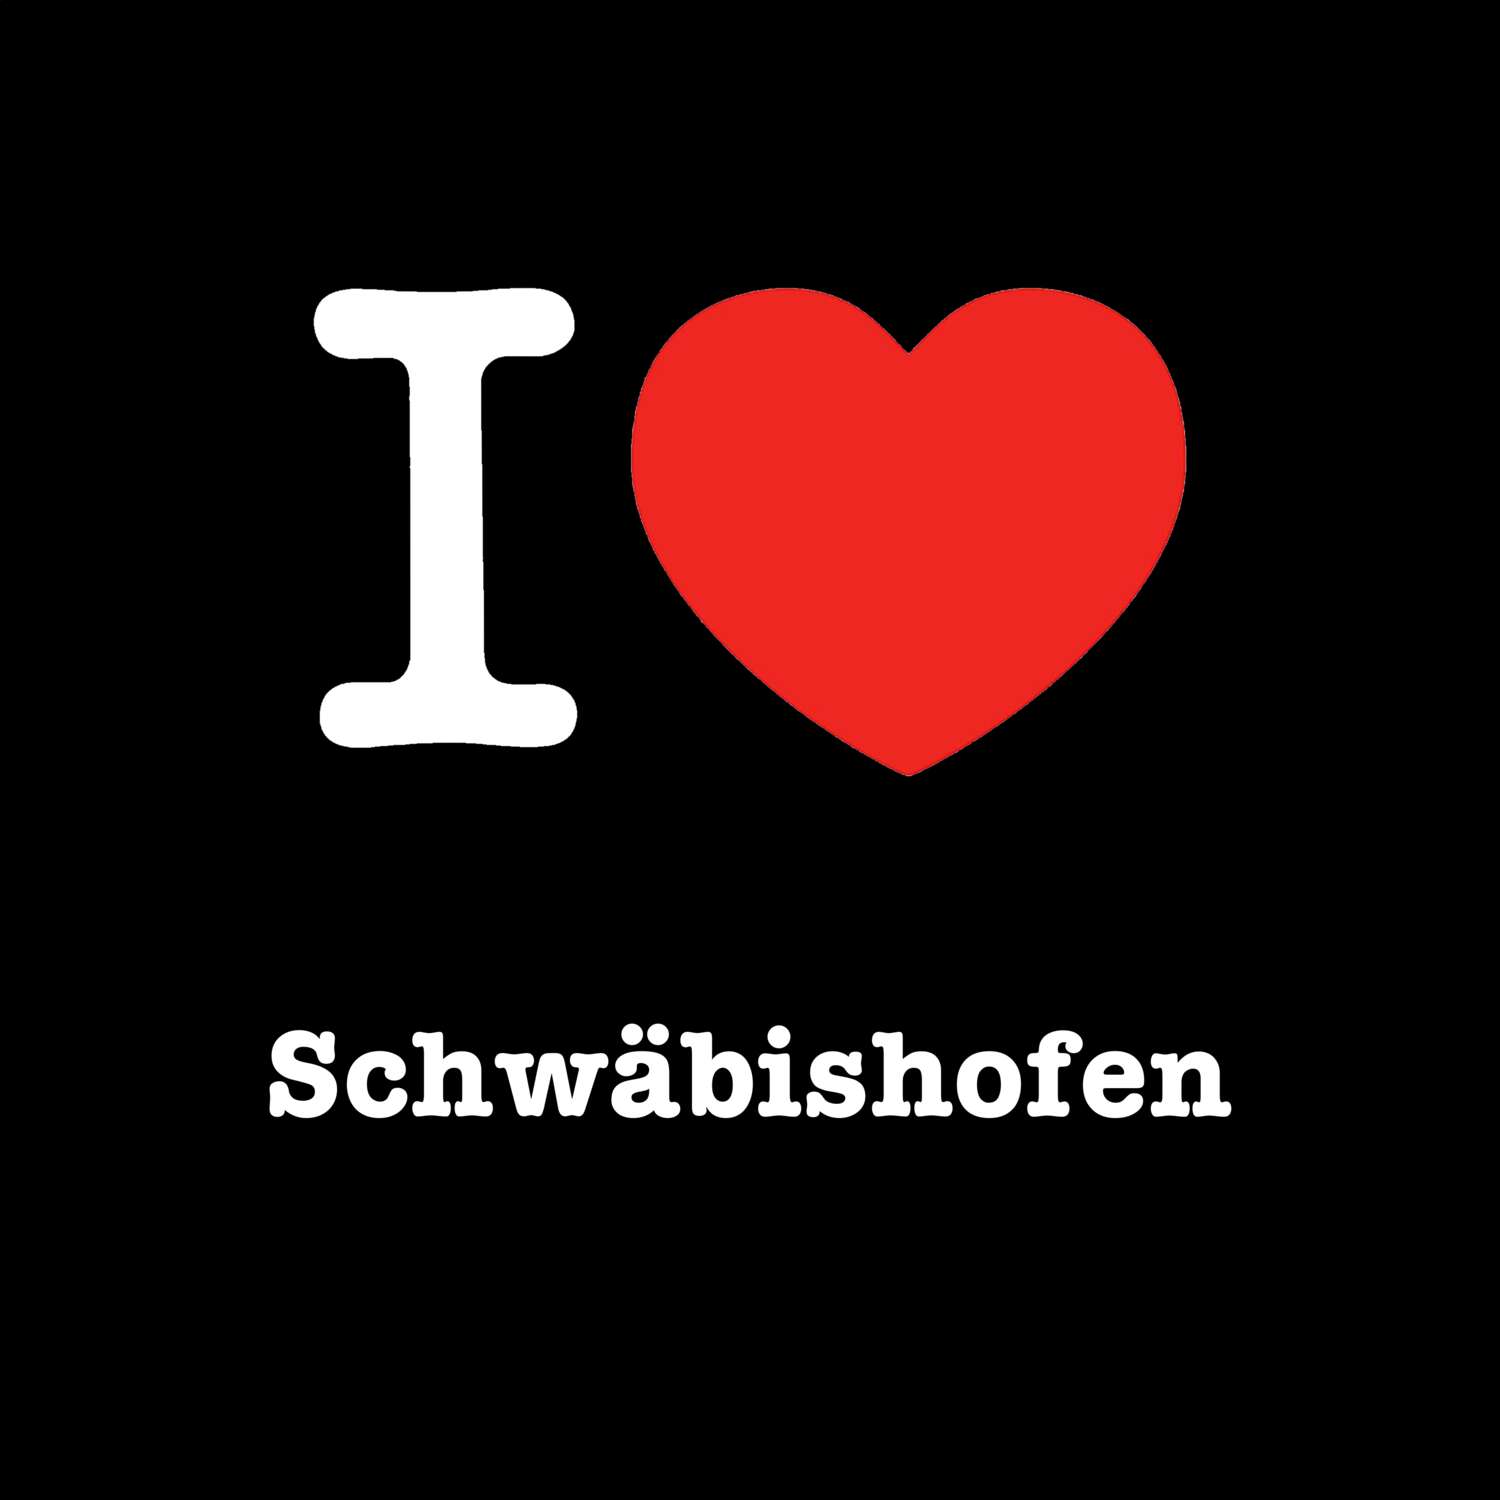 Schwäbishofen T-Shirt »I love«